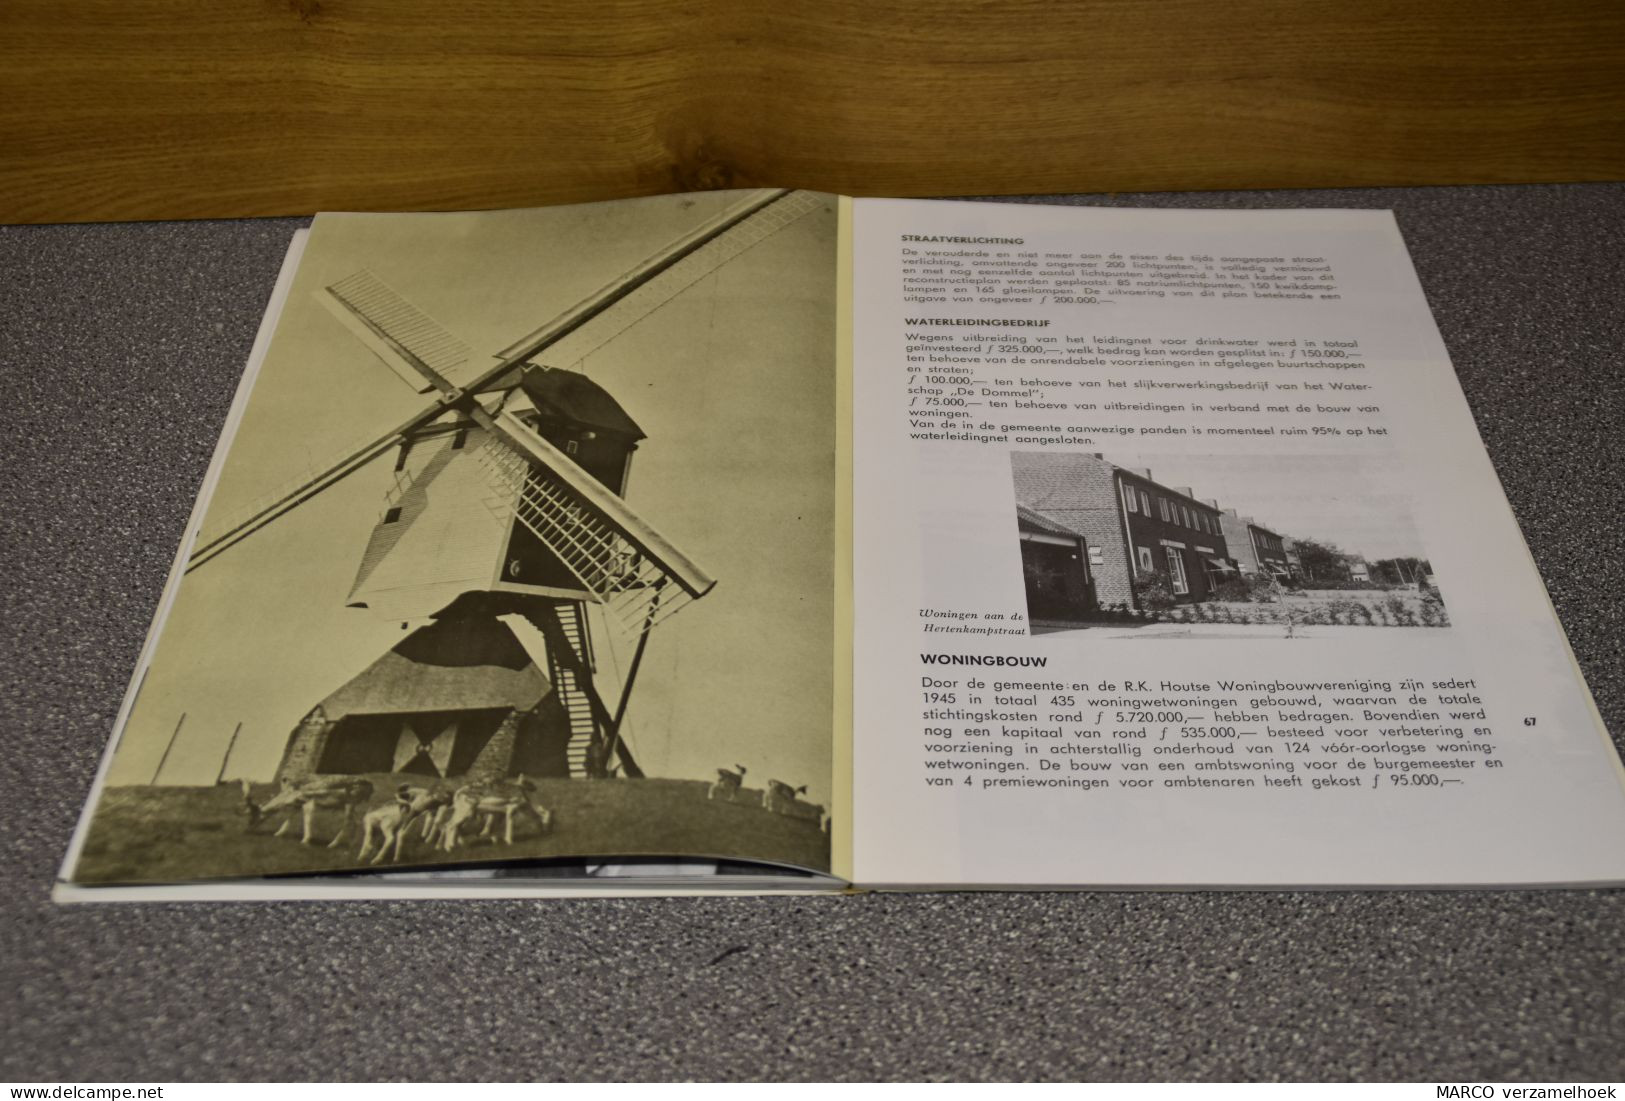 Groei En Ontwikkeling MIERLO (NL) 1963 - Practical